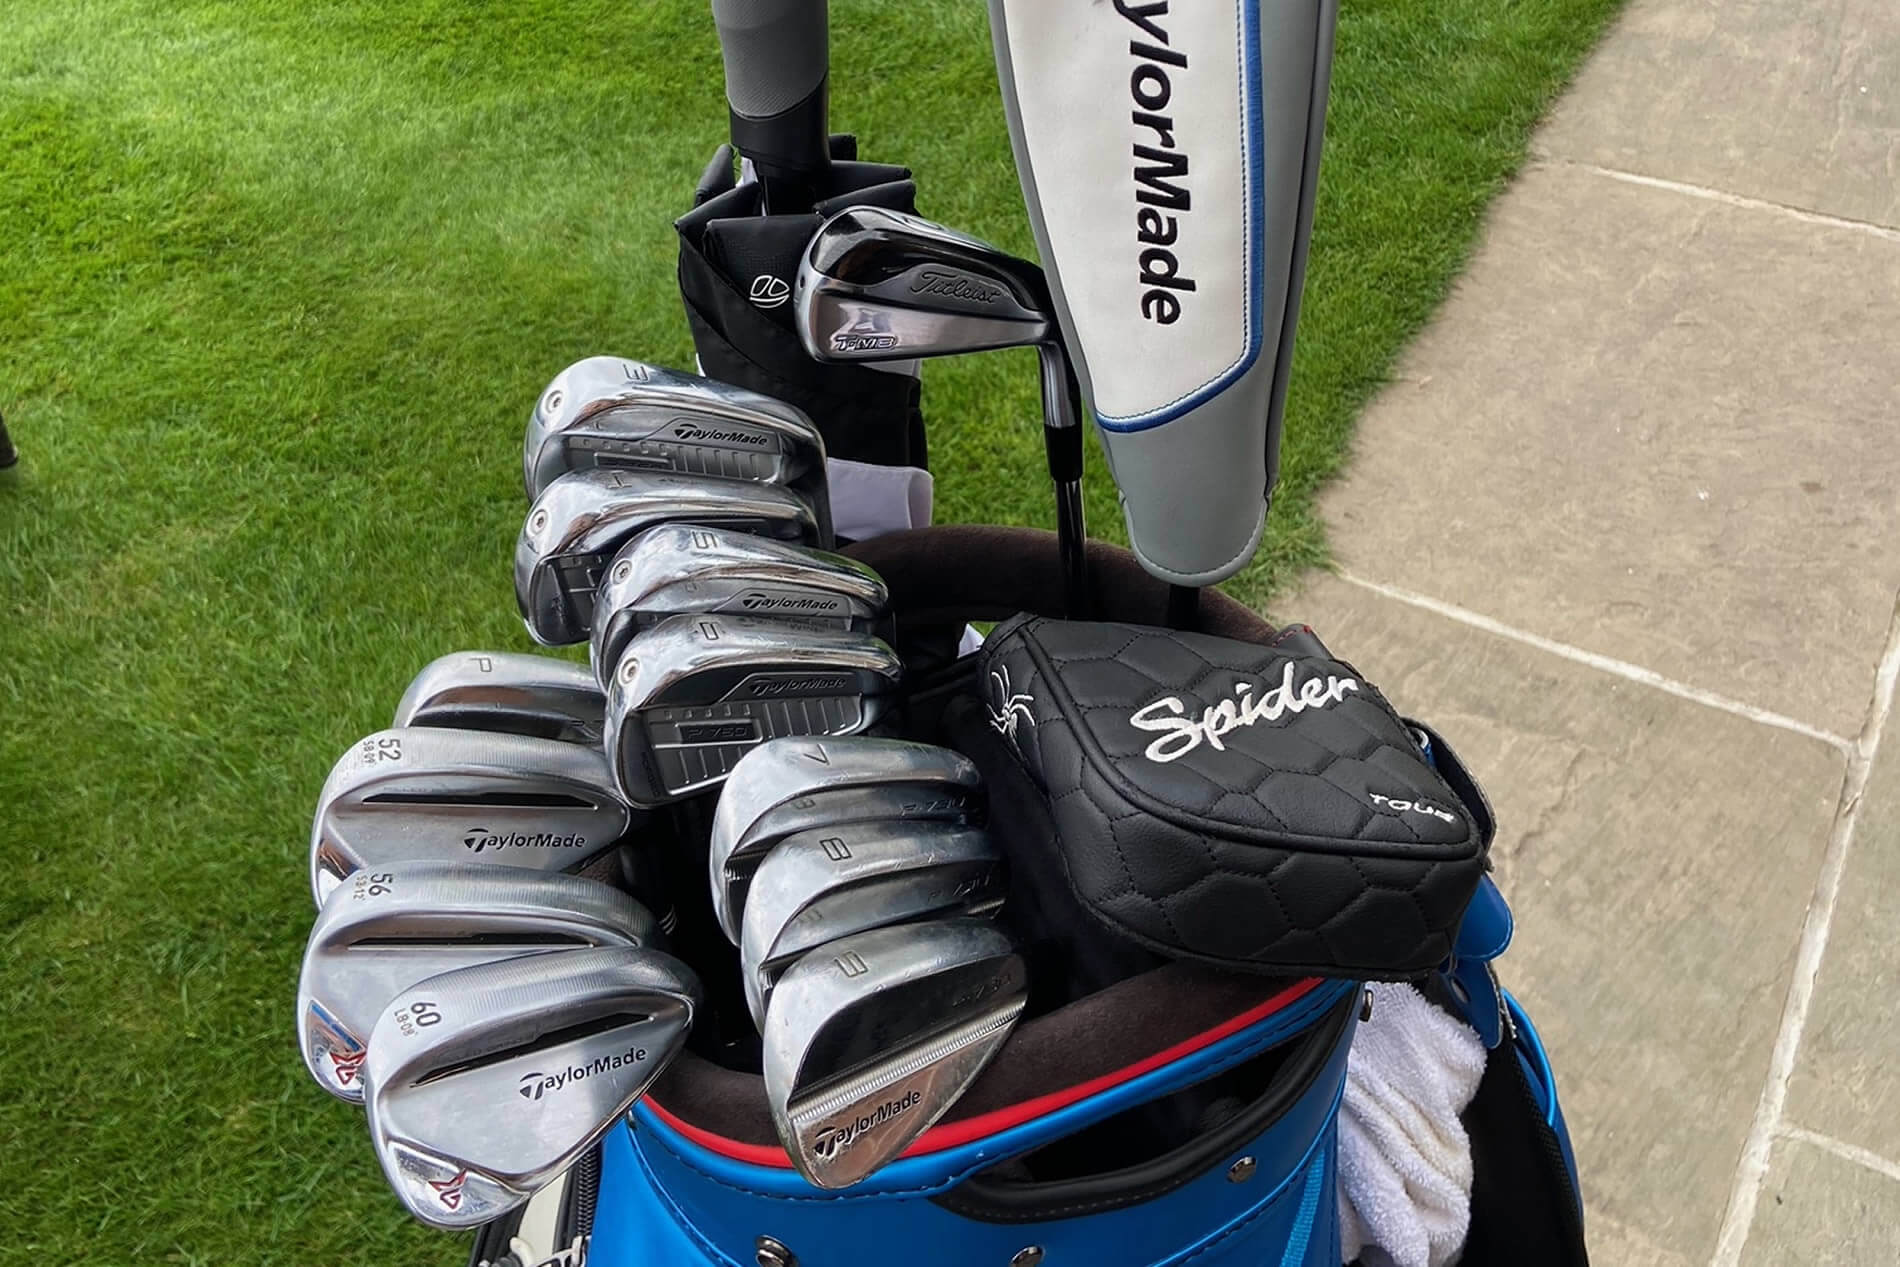 What's in my golf bag? - Proper Golfer